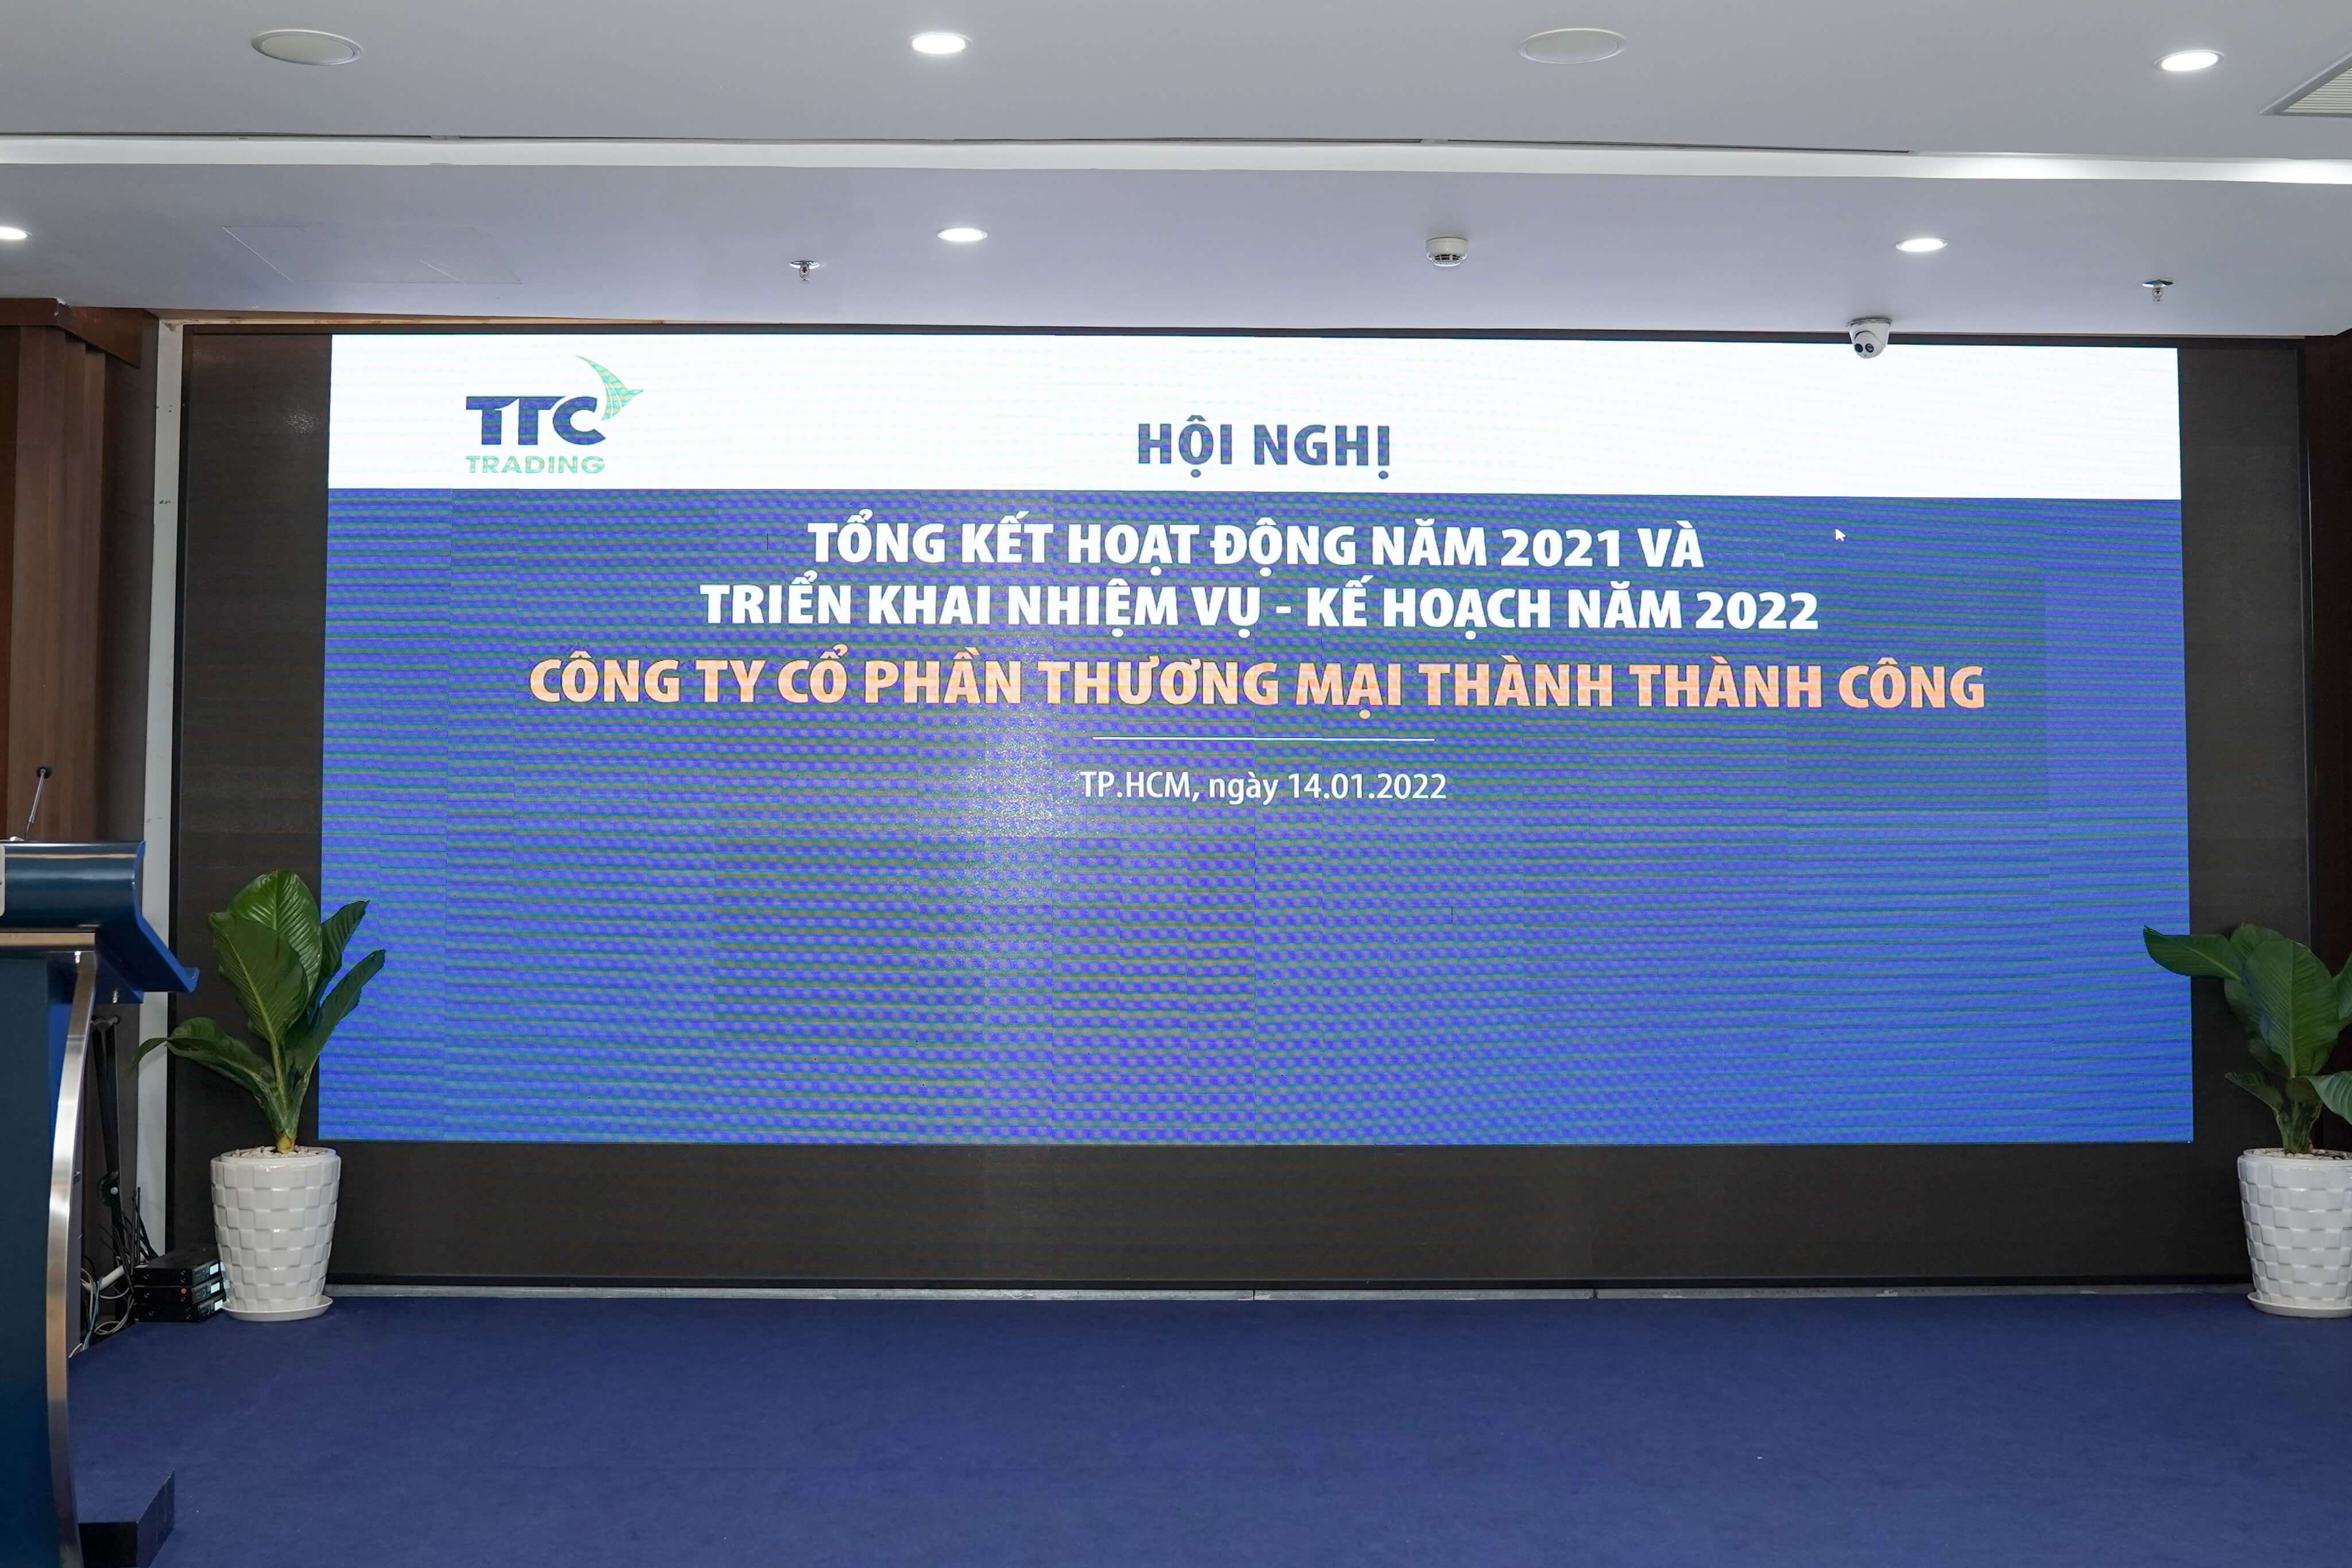 Hội nghị tổng kết năm 2021 của TTC Trading